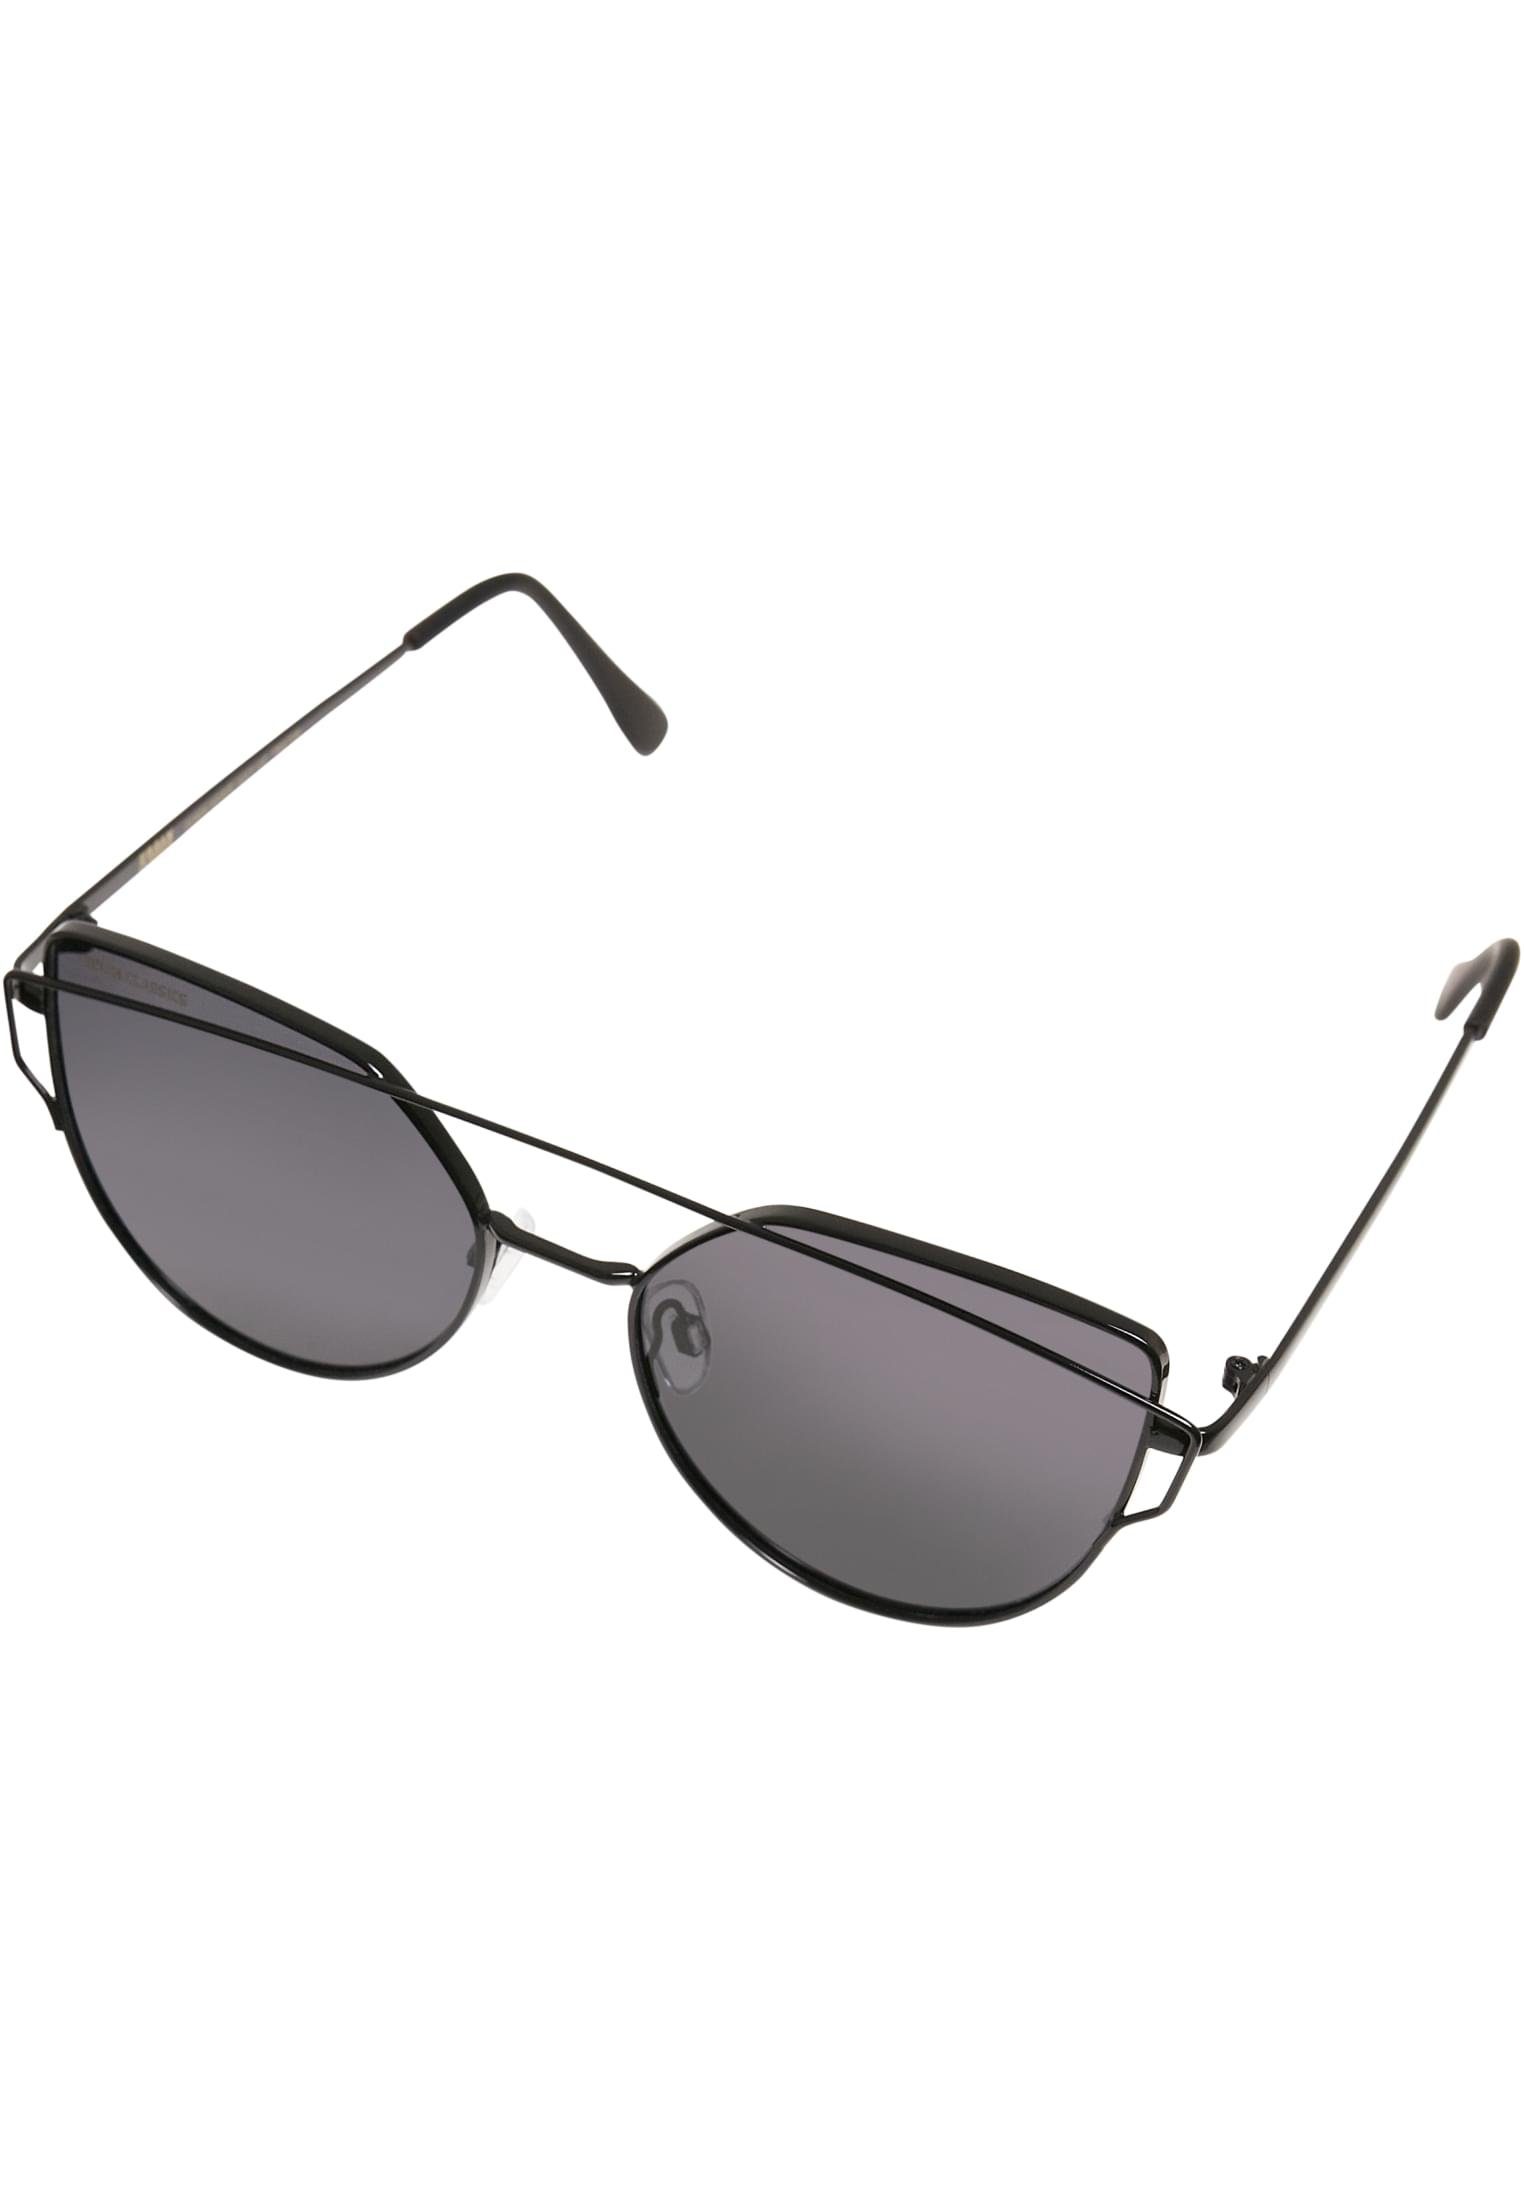 URBAN CLASSICS Sonnenbrille Sunglasses July black UC Accessoires